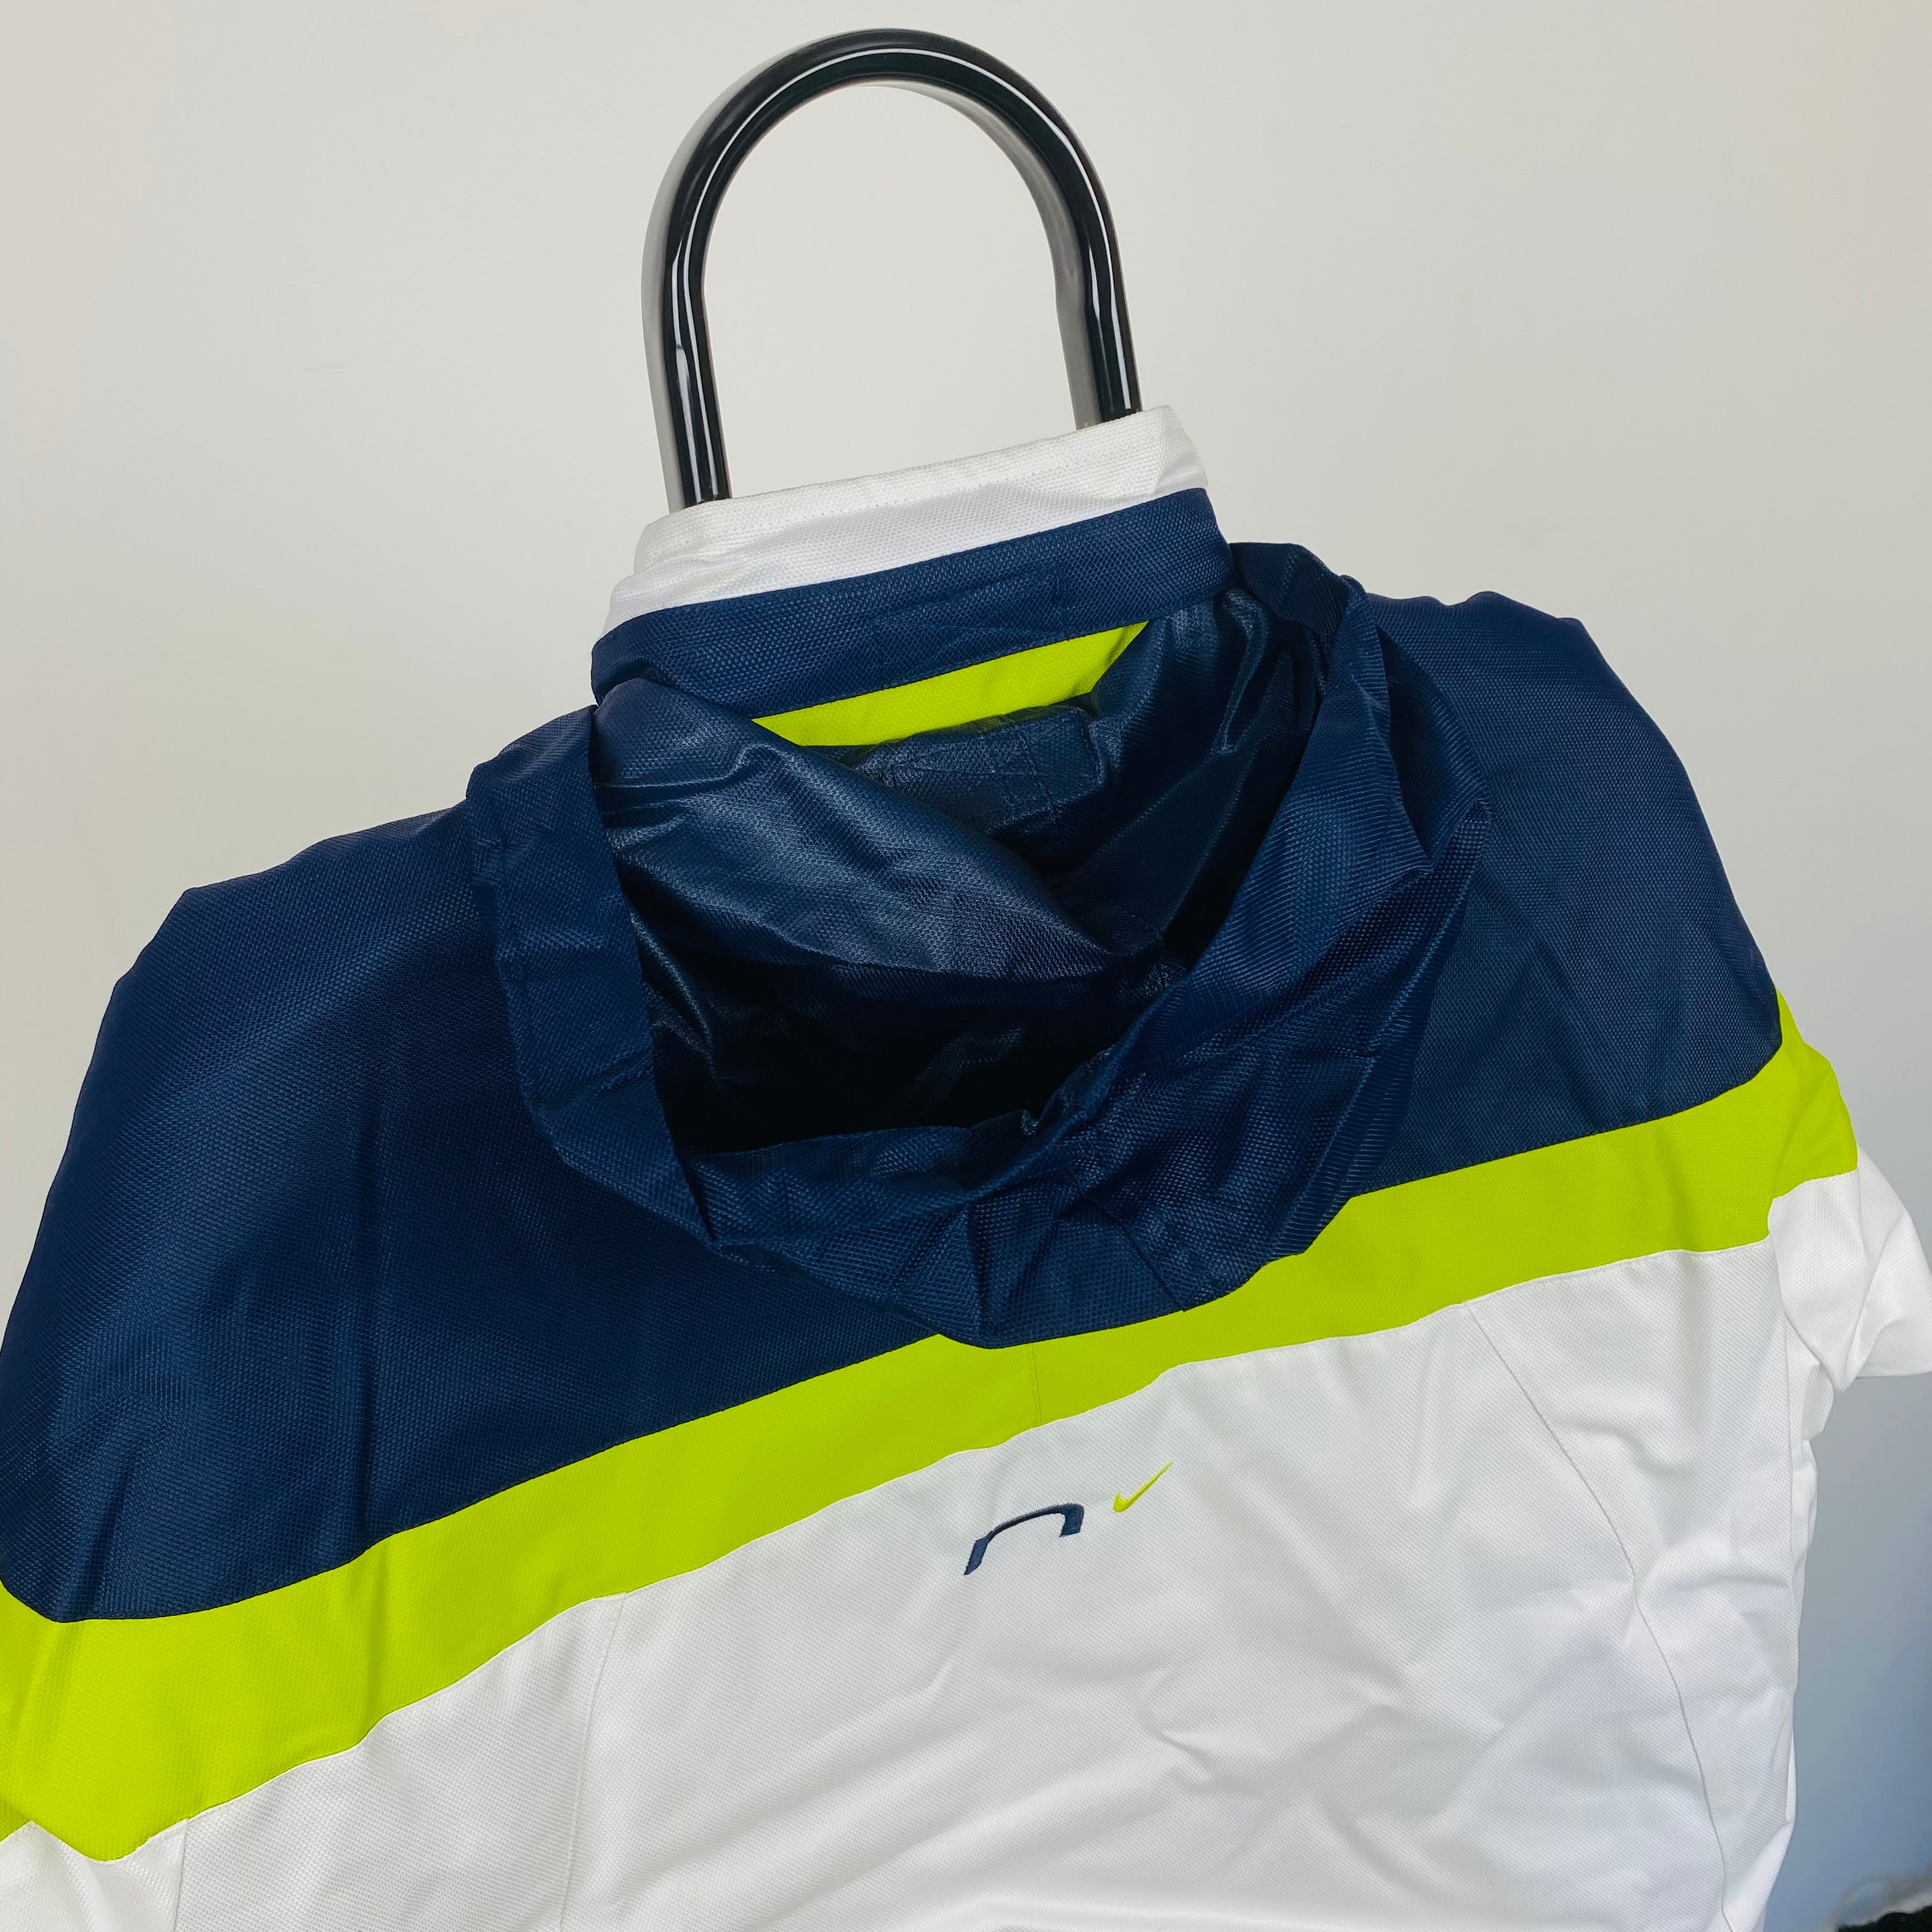 Vintage Nike Waterproof Coat Jacket White XS